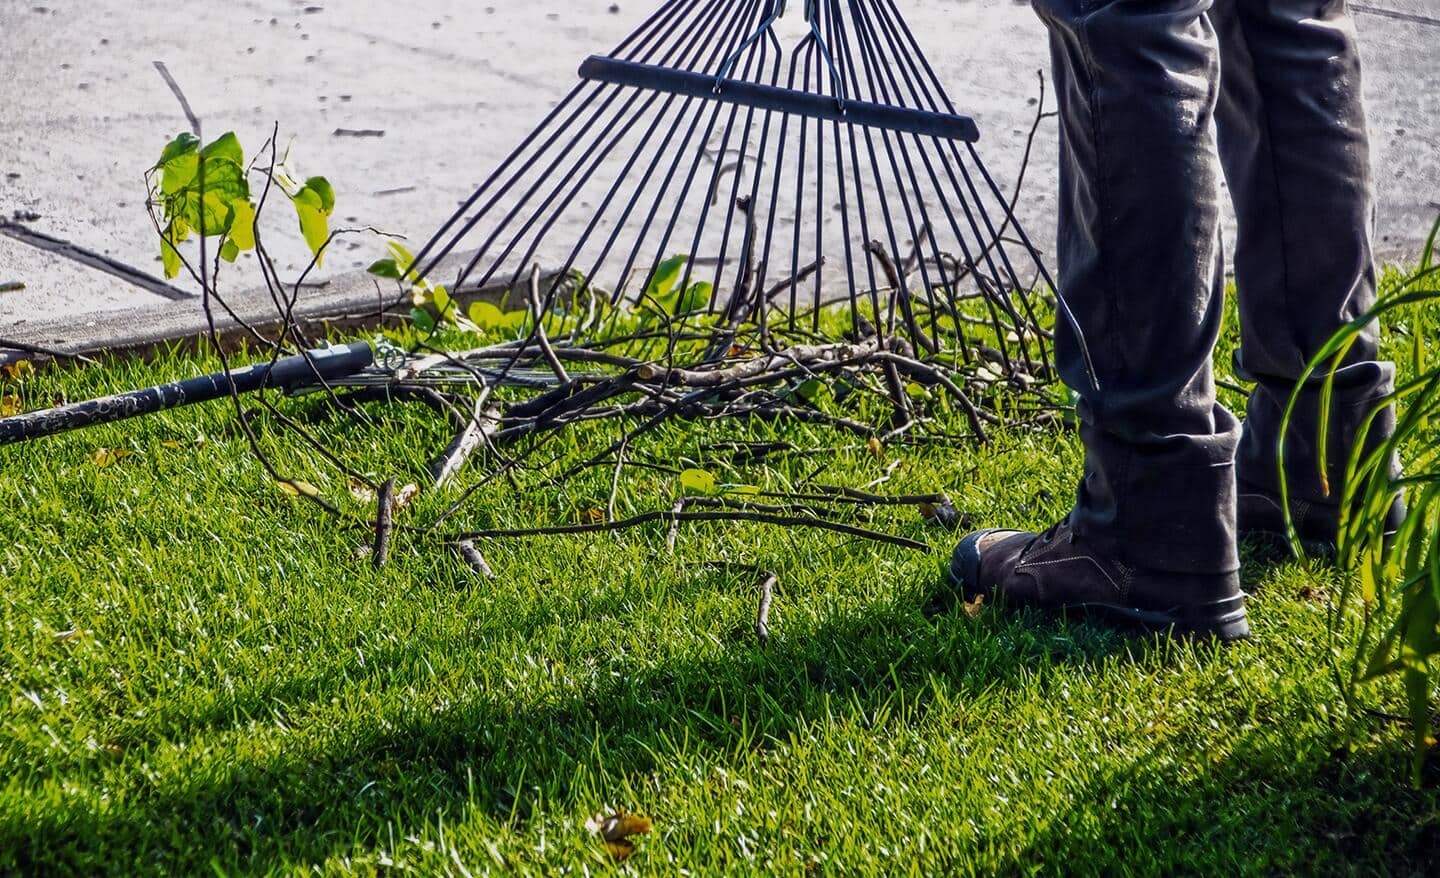 Gardener raking sticks in a spring lawn